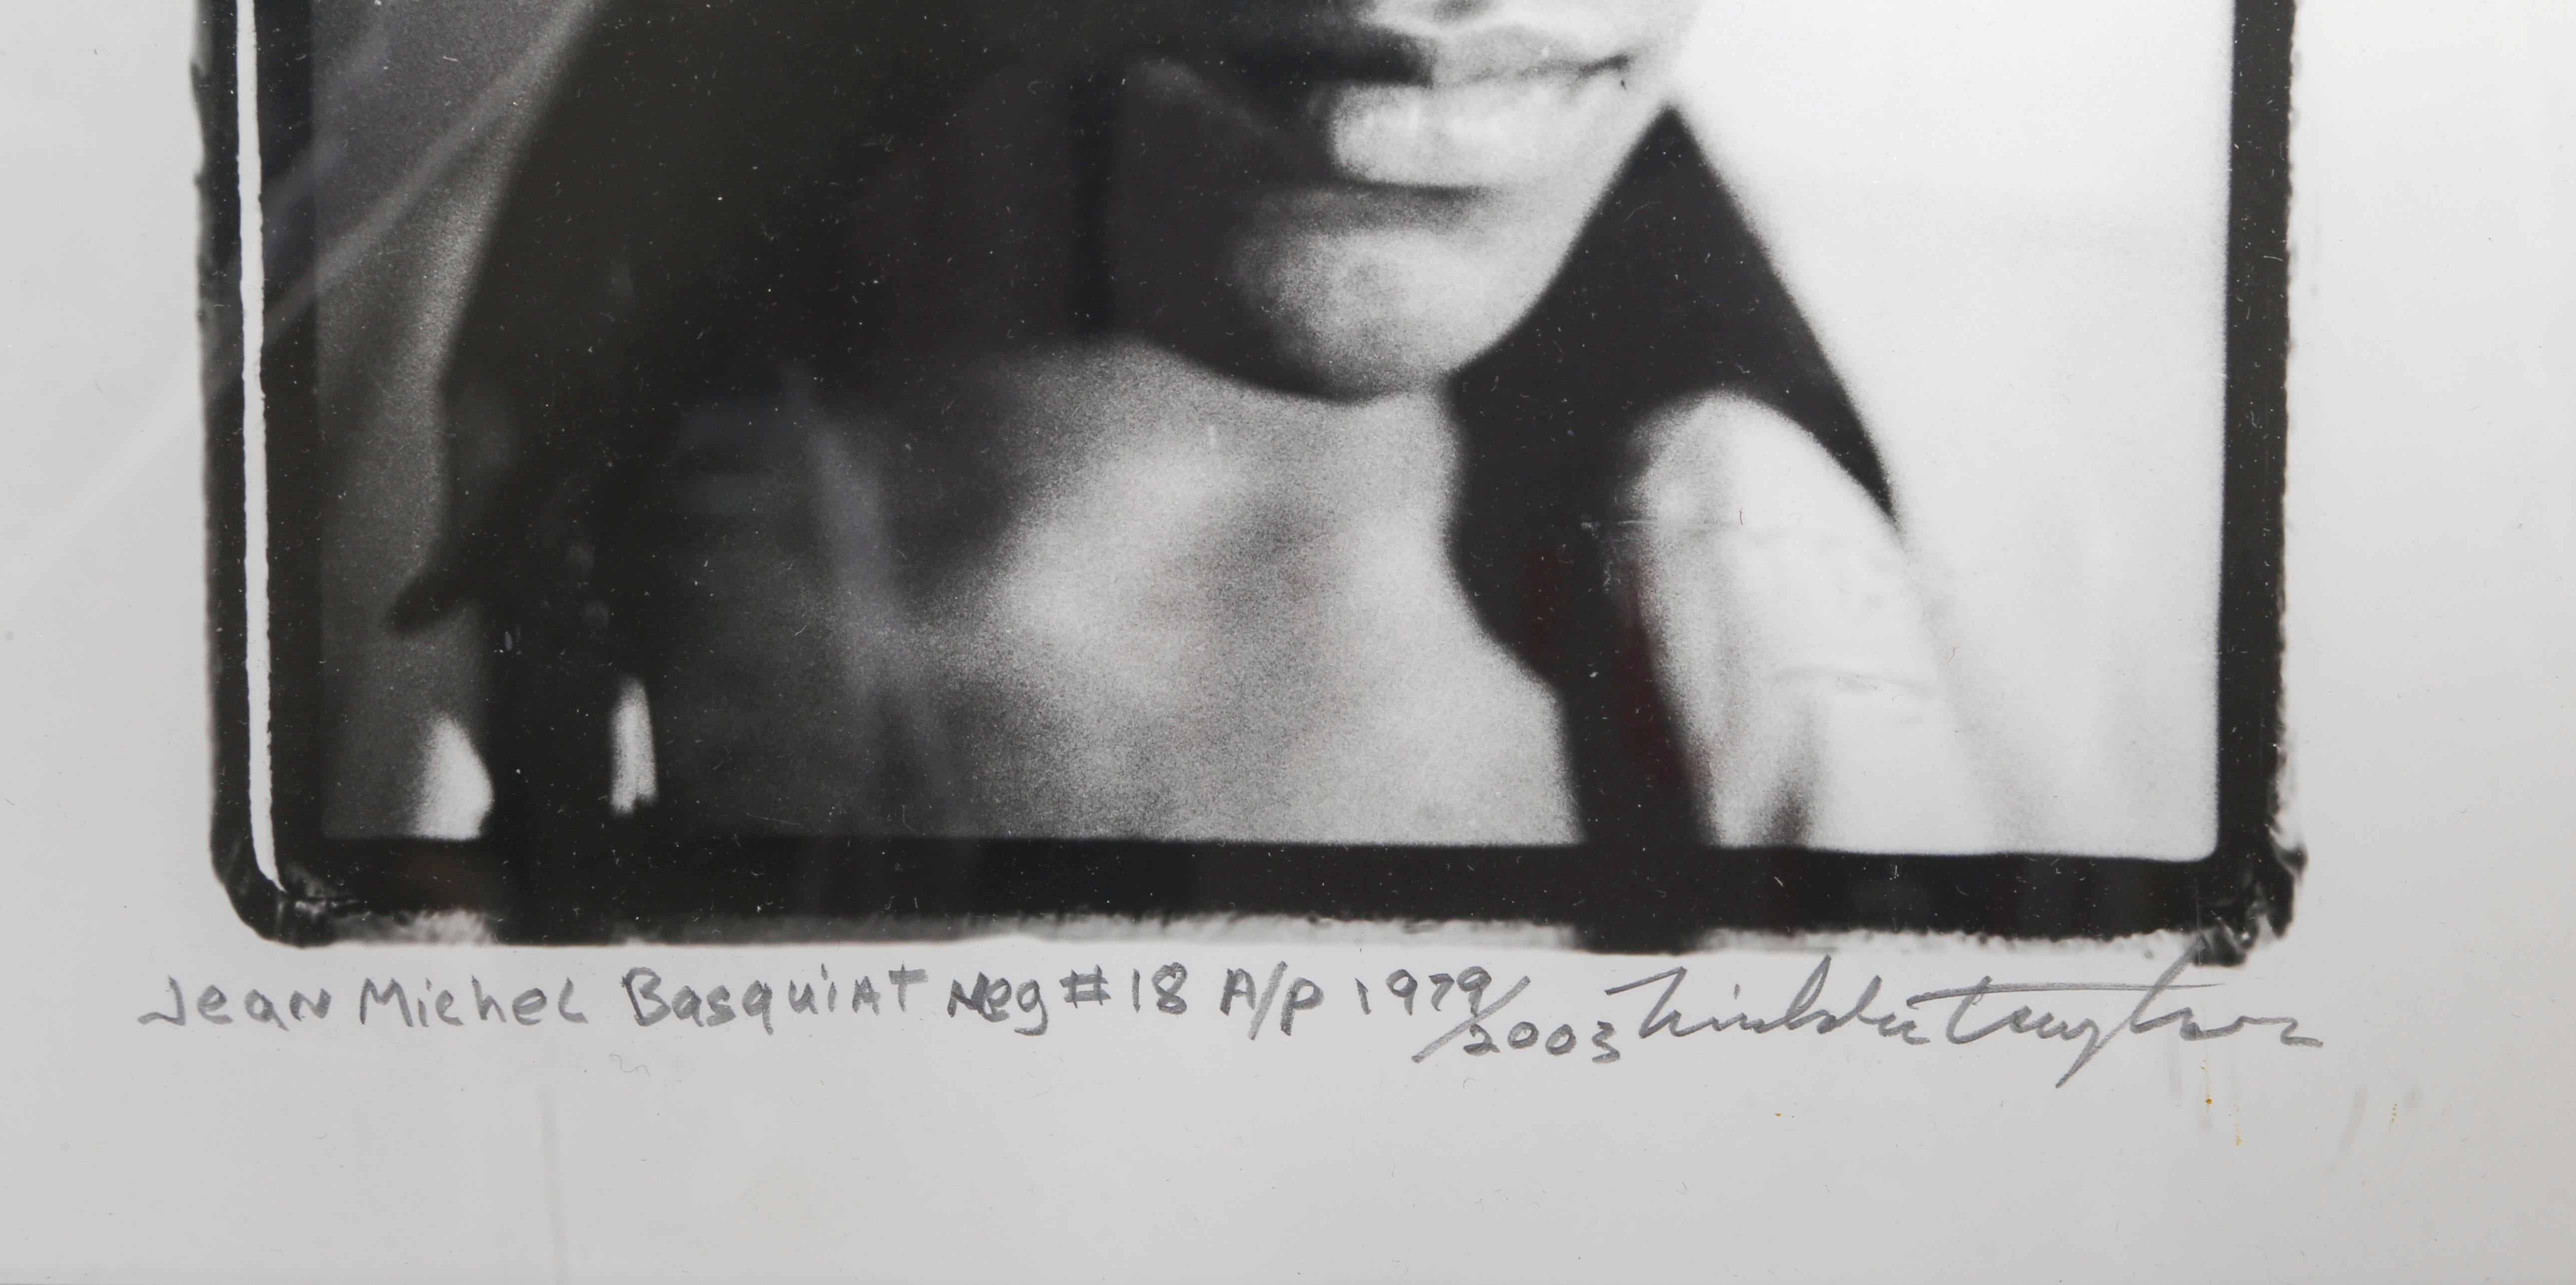 Le photographe Nicholas Taylor a eu l'occasion unique de rencontrer un jeune Jean-Michel Basquiat bien avant que sa carrière d'artiste ne prenne son envol. Taylor a rencontré et photographié Basquiat et son groupe 